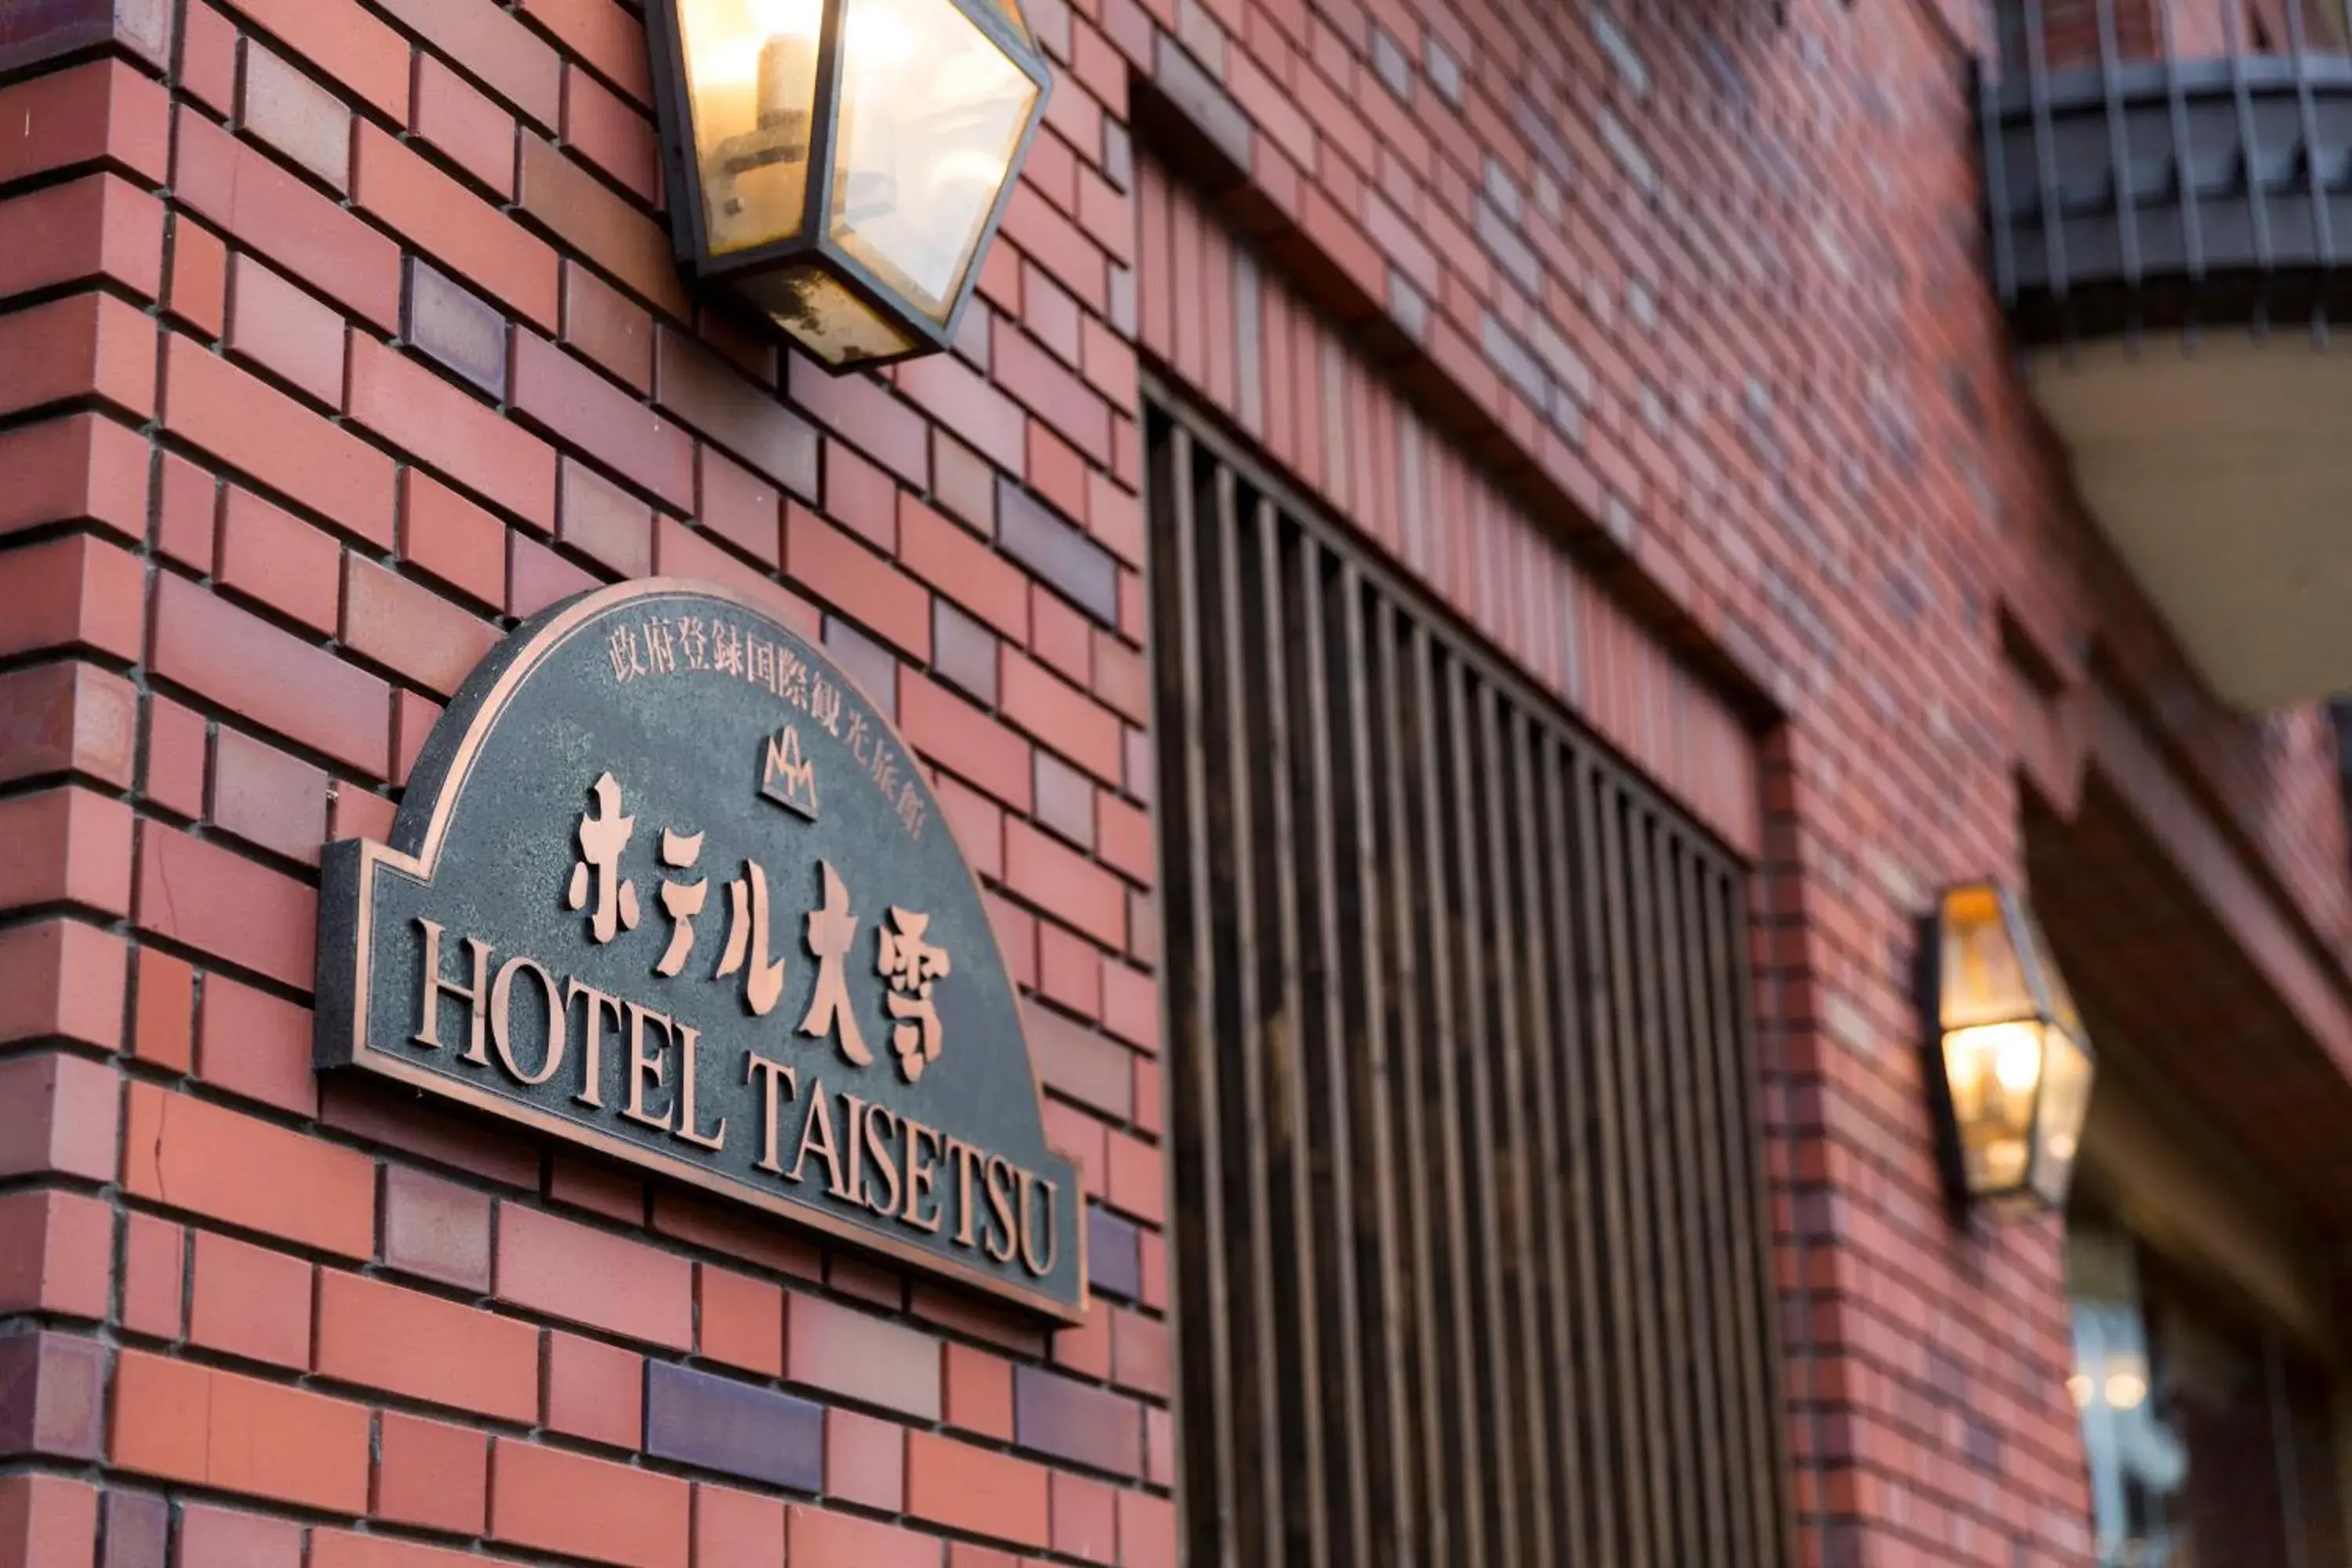 Facade/entrance in Hotel Taisetsu